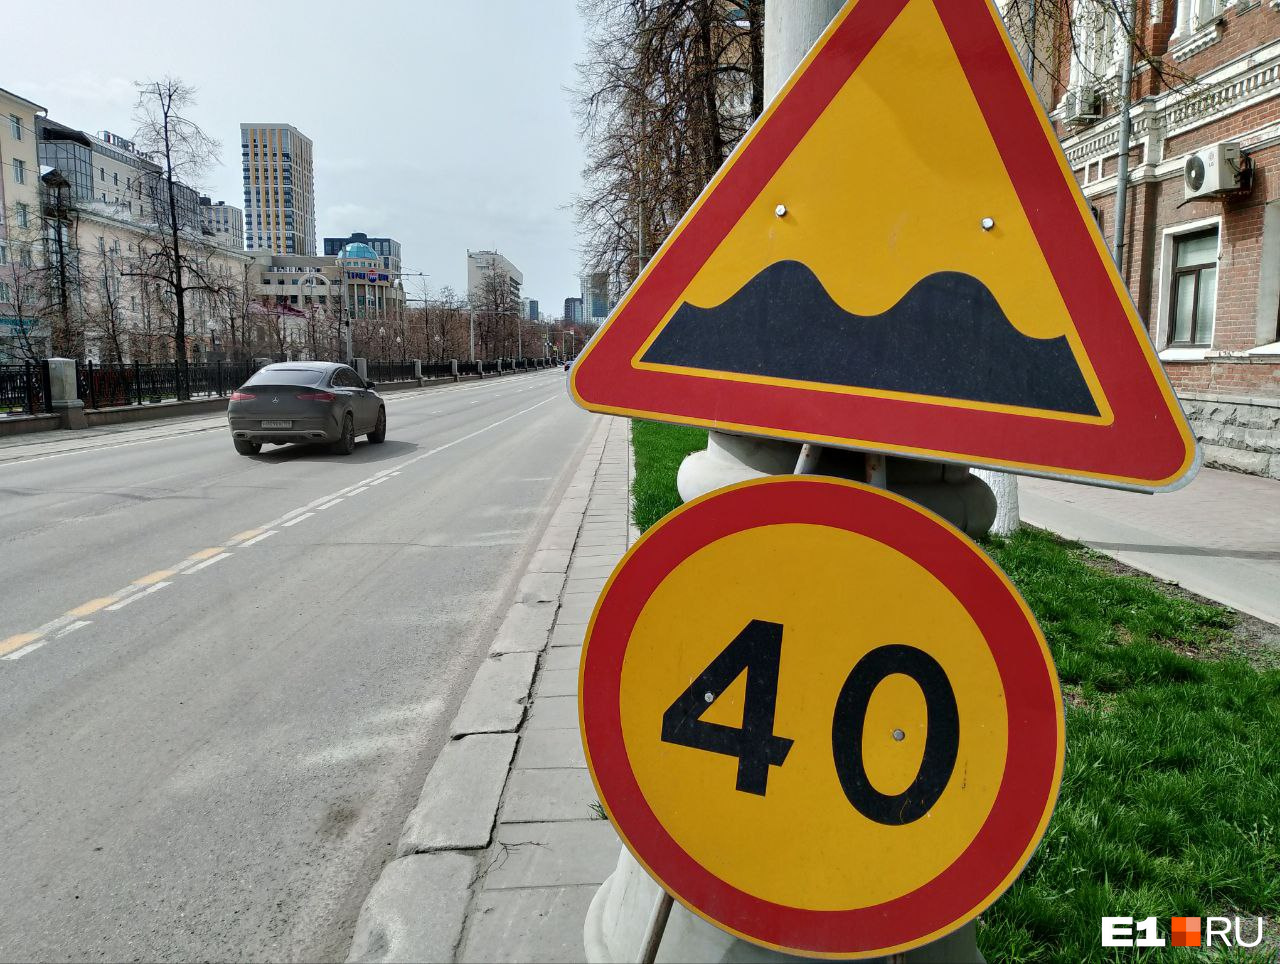 «Мне стыдно за наши дороги». Мэр Екатеринбурга внезапно заметил ужасный асфальт на проспекте Ленина